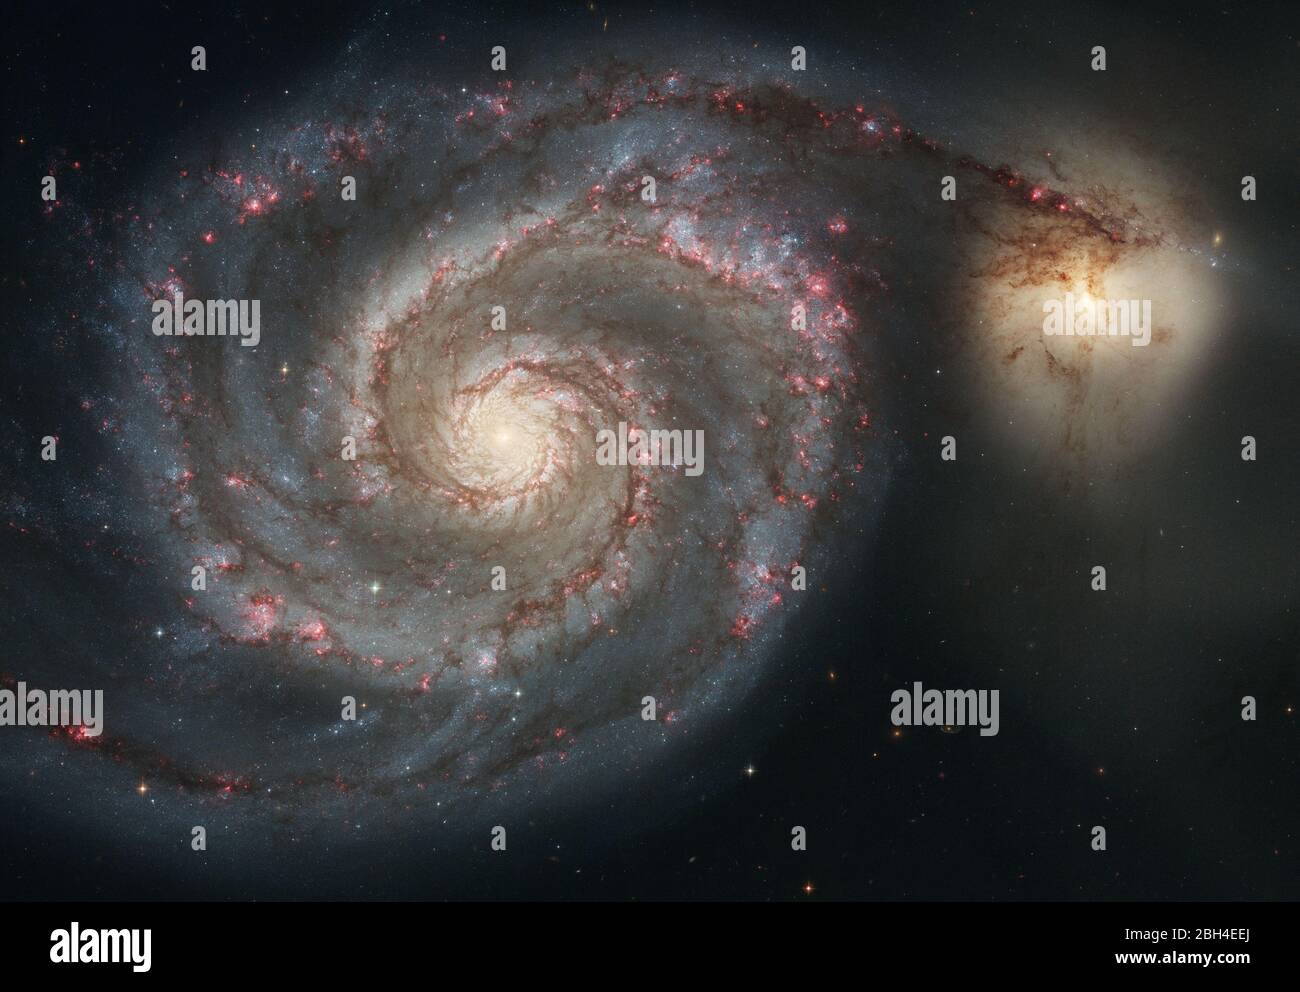 Aufgenommen im Januar 2005 mit der Advanced Camera for Surveys (ACS) des Hubble Space Telescope, zeigt die große Konstruktion der Spiralgalaxie M51 (NGC 5194), von ihren geschwungenen Spiralarmen, wo junge Sterne wohnen, bis hin zu ihrem gelblichen Zentralkern, einem Zuhause älterer Sterne. Die Galaxie wird wegen ihrer wirbelnden Struktur den Spitznamen Whirlpool genannt. Das auffälligste Merkmal des Whirlpools sind seine zwei geschwungenen Arme, ein Markenzeichen der sogenannten Grand-Design Spiralgalaxien. Stockfoto